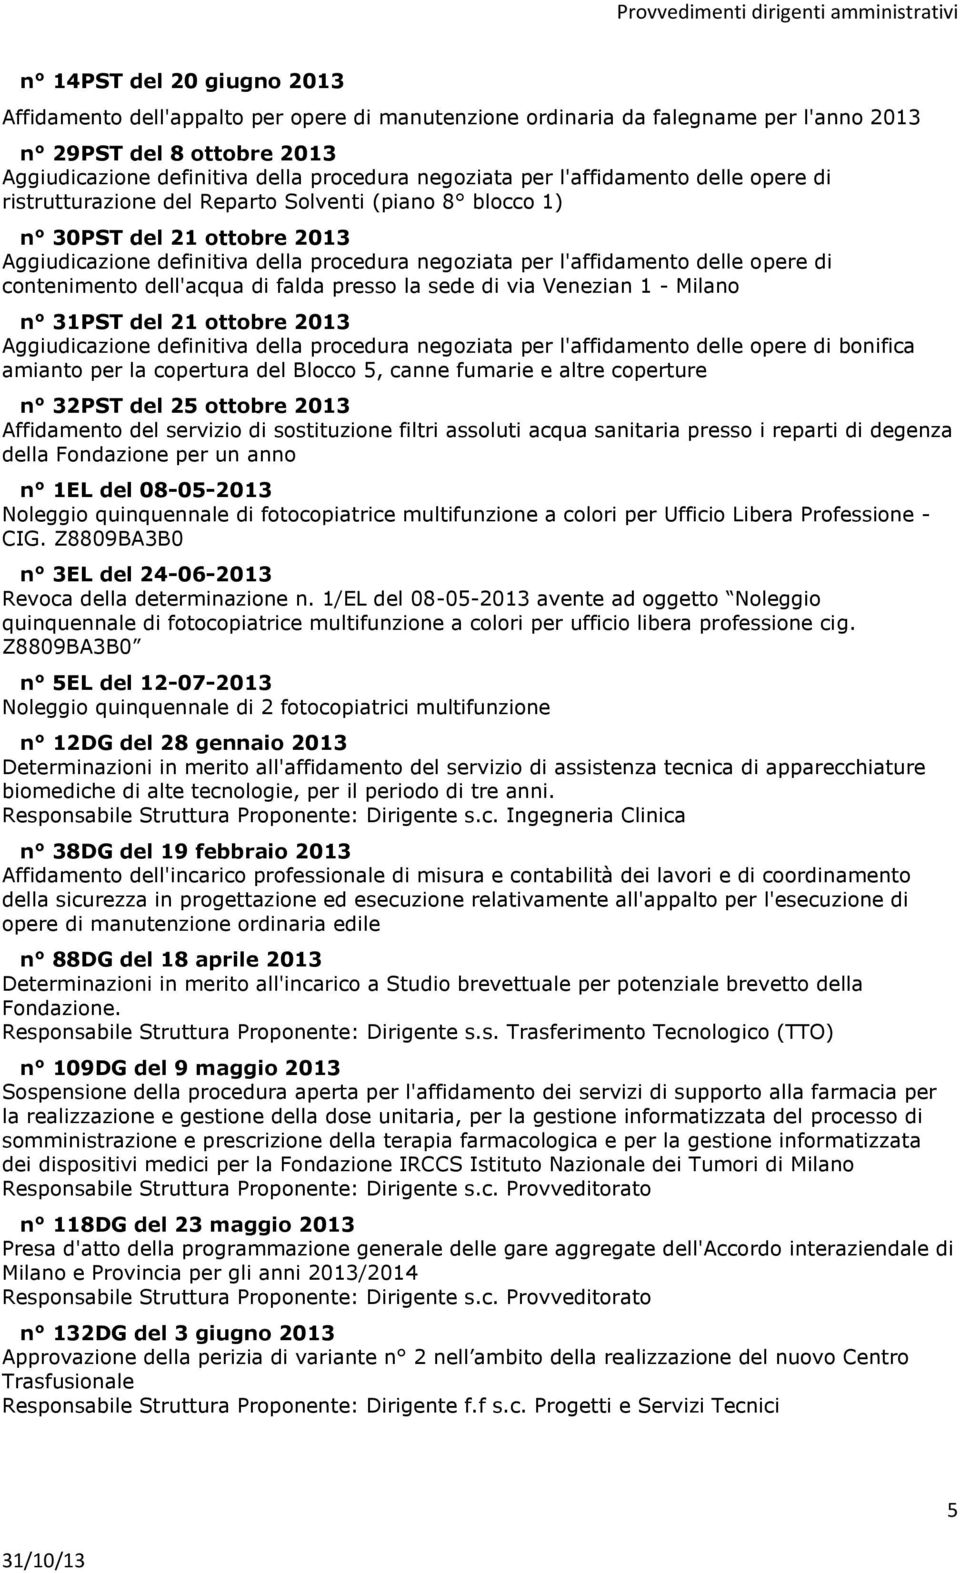 contenimento dell'acqua di falda presso la sede di via Venezian 1 - Milano n 31PST del 21 ottobre 2013 Aggiudicazione definitiva della procedura negoziata per l'affidamento delle opere di bonifica